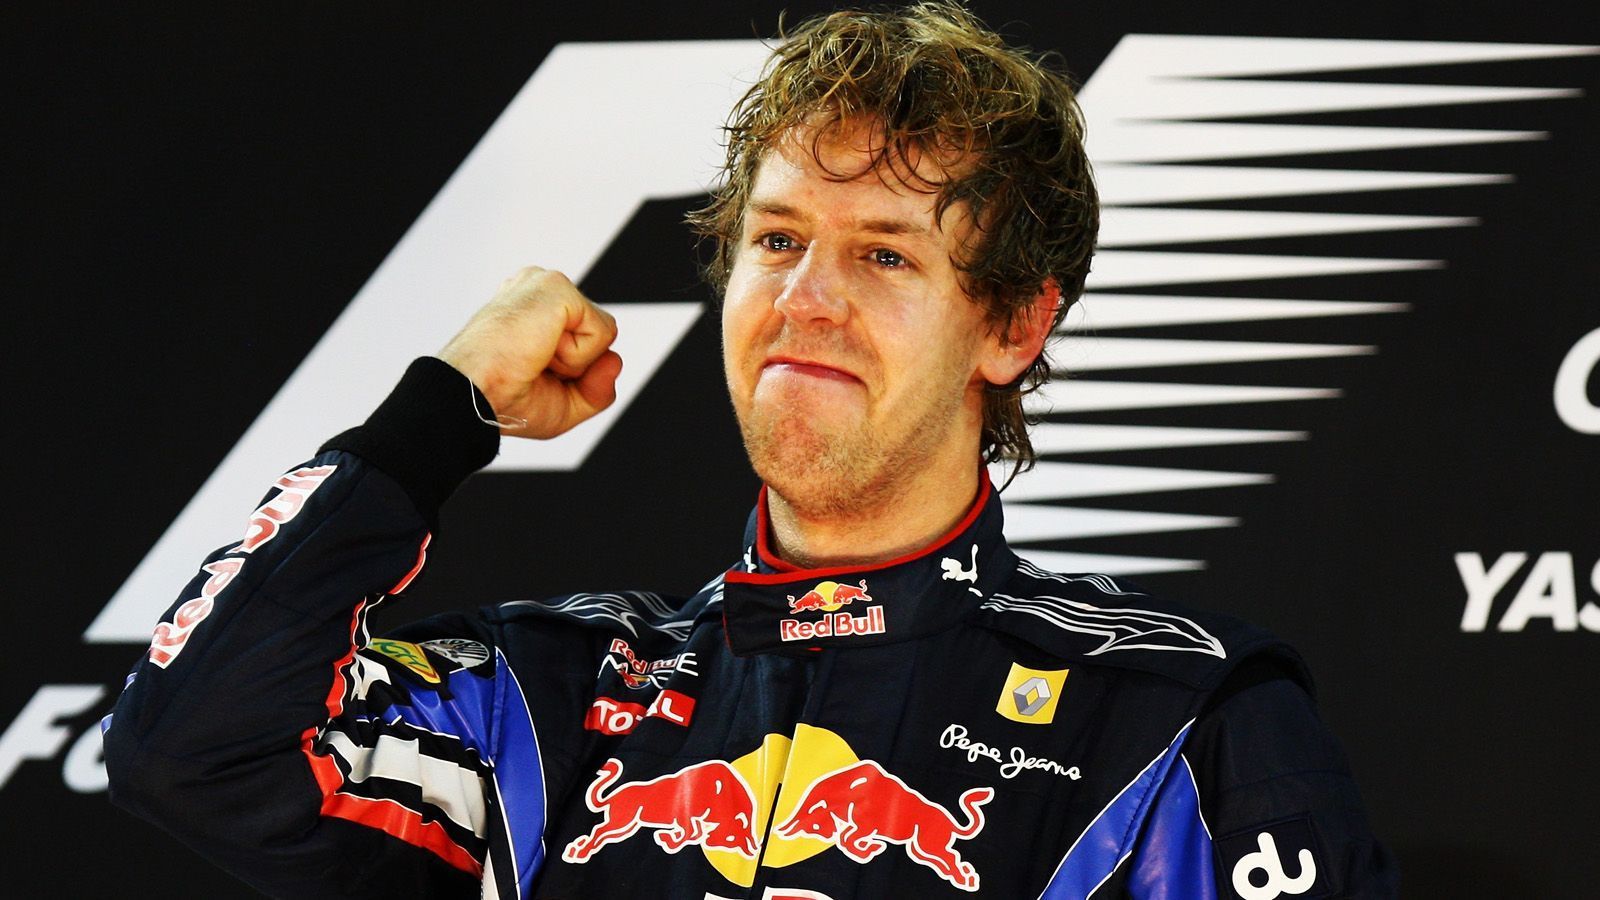 
                <strong>Jüngster Weltmeister </strong><br>
                Sebastian Vettel (Weltmeister 2010, damaliges Alter: 23 Jahre und 134 Tage)
              